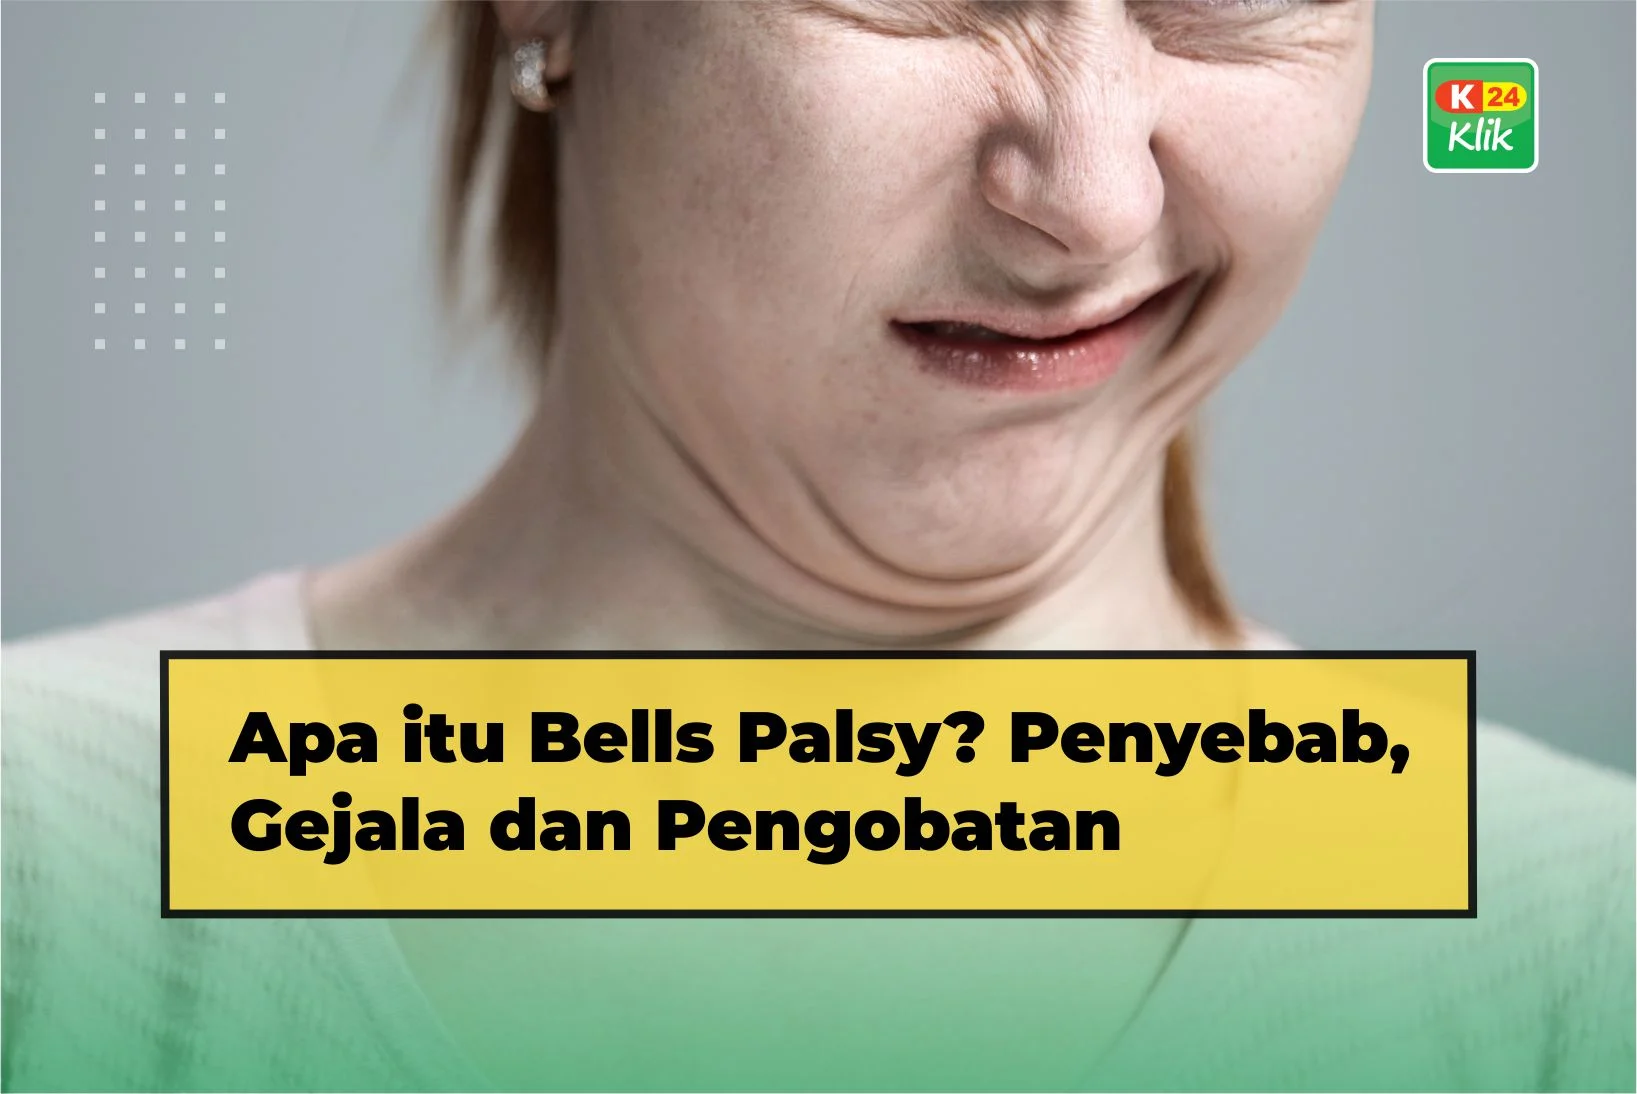 apa itu bells palsy